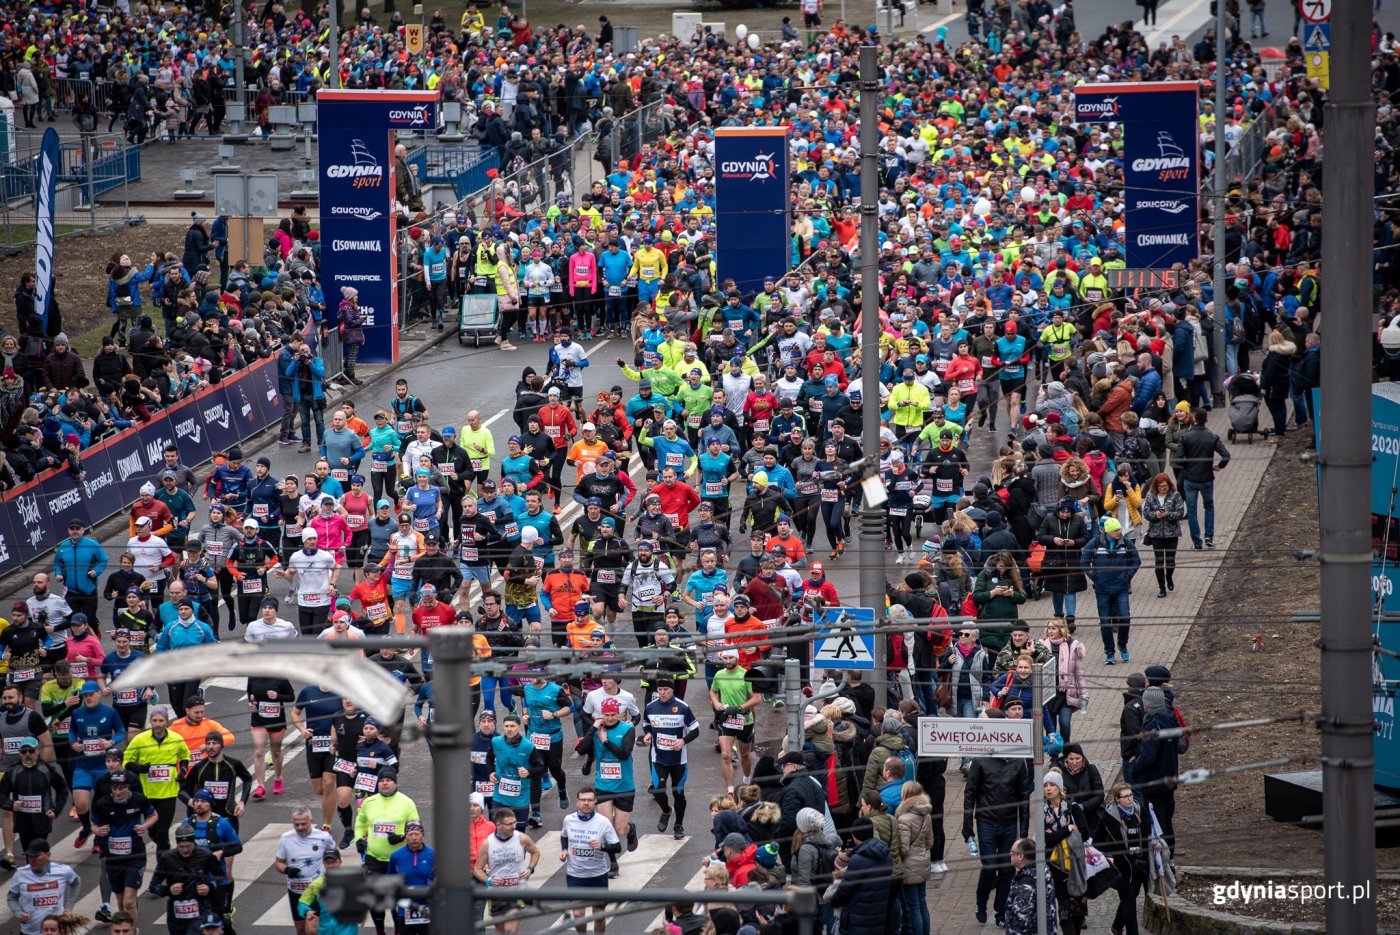 Na starcie Mistrzostw Świata w Półmaratonie Gdynia 2020 może stanąć 25 tysięcy osób / fot. Gdyńskie Centrum Sportu